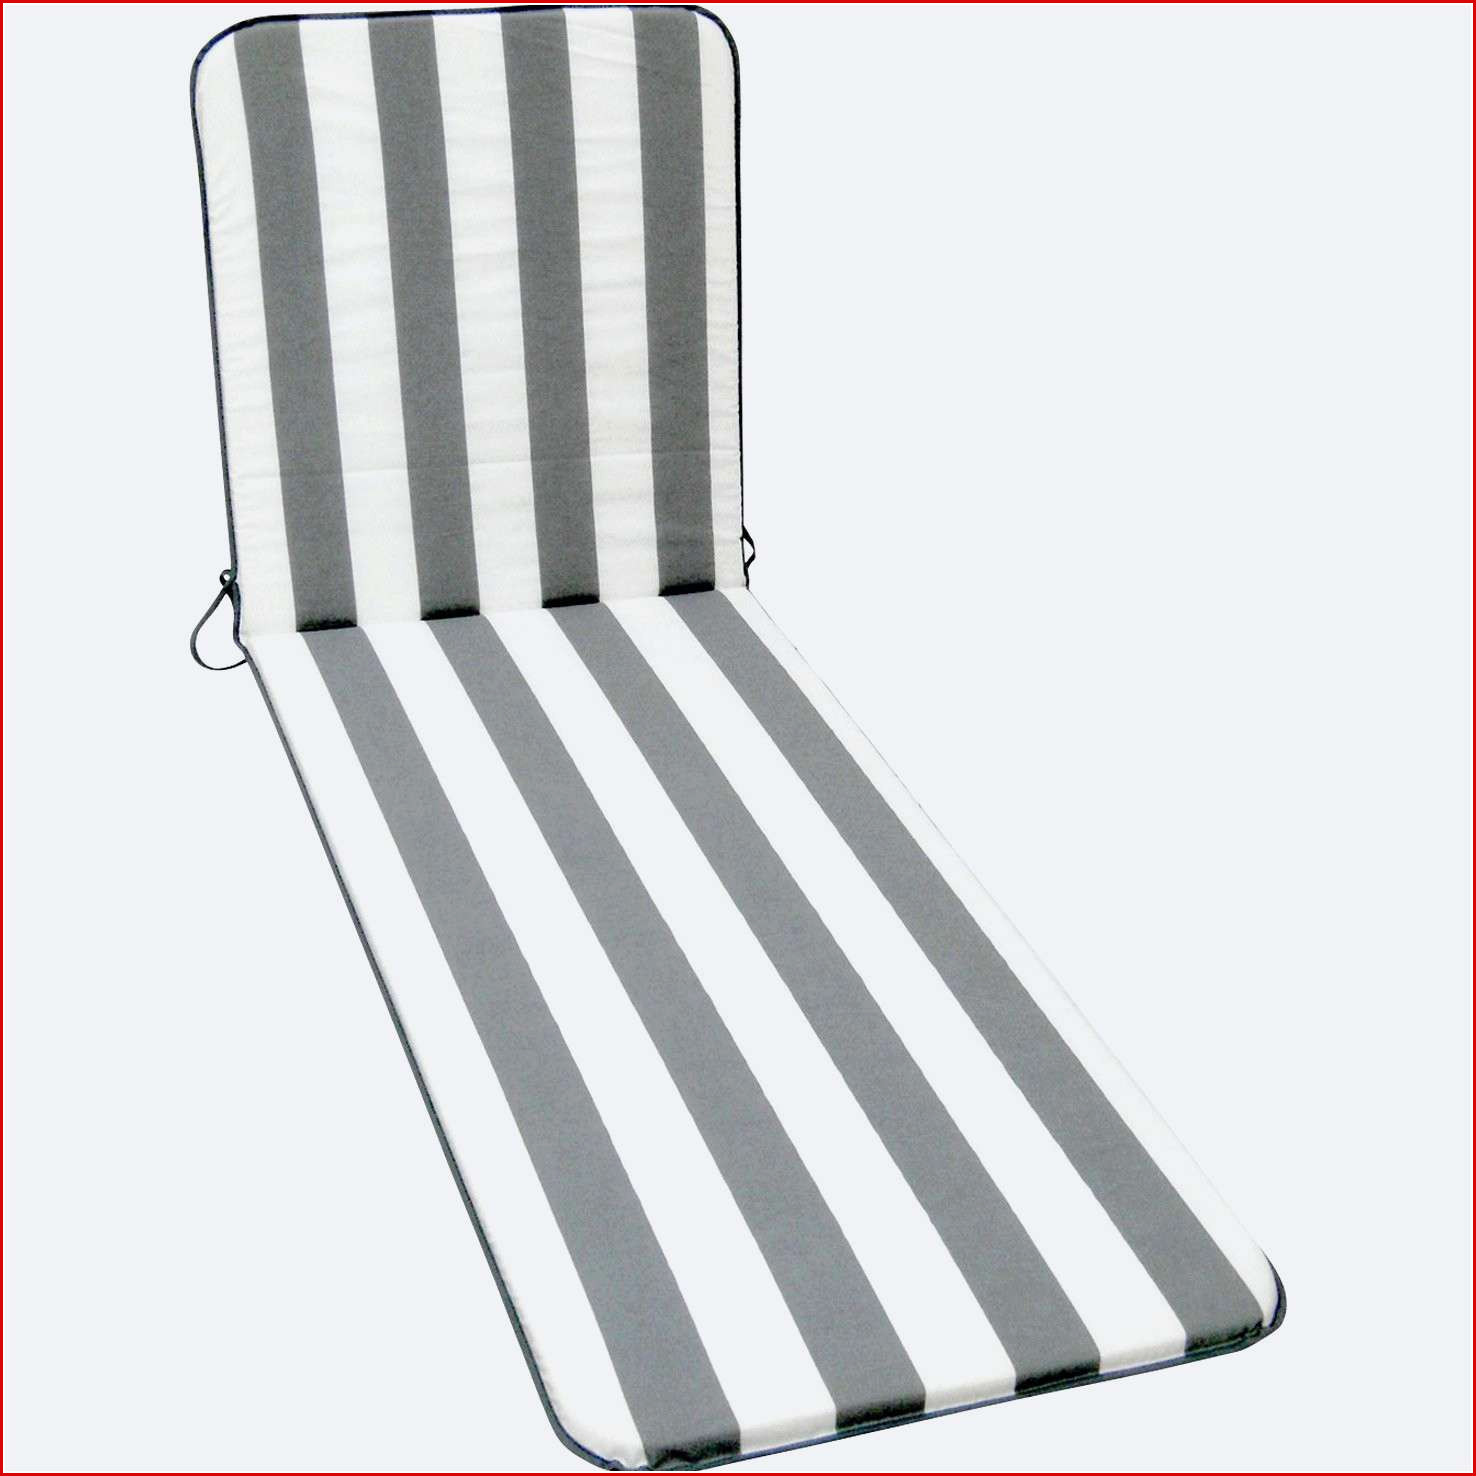 chaise longue basculante de jardin etonnant matelas pour transat transat chaise longue jardin chaise de chaise longue basculante de jardin